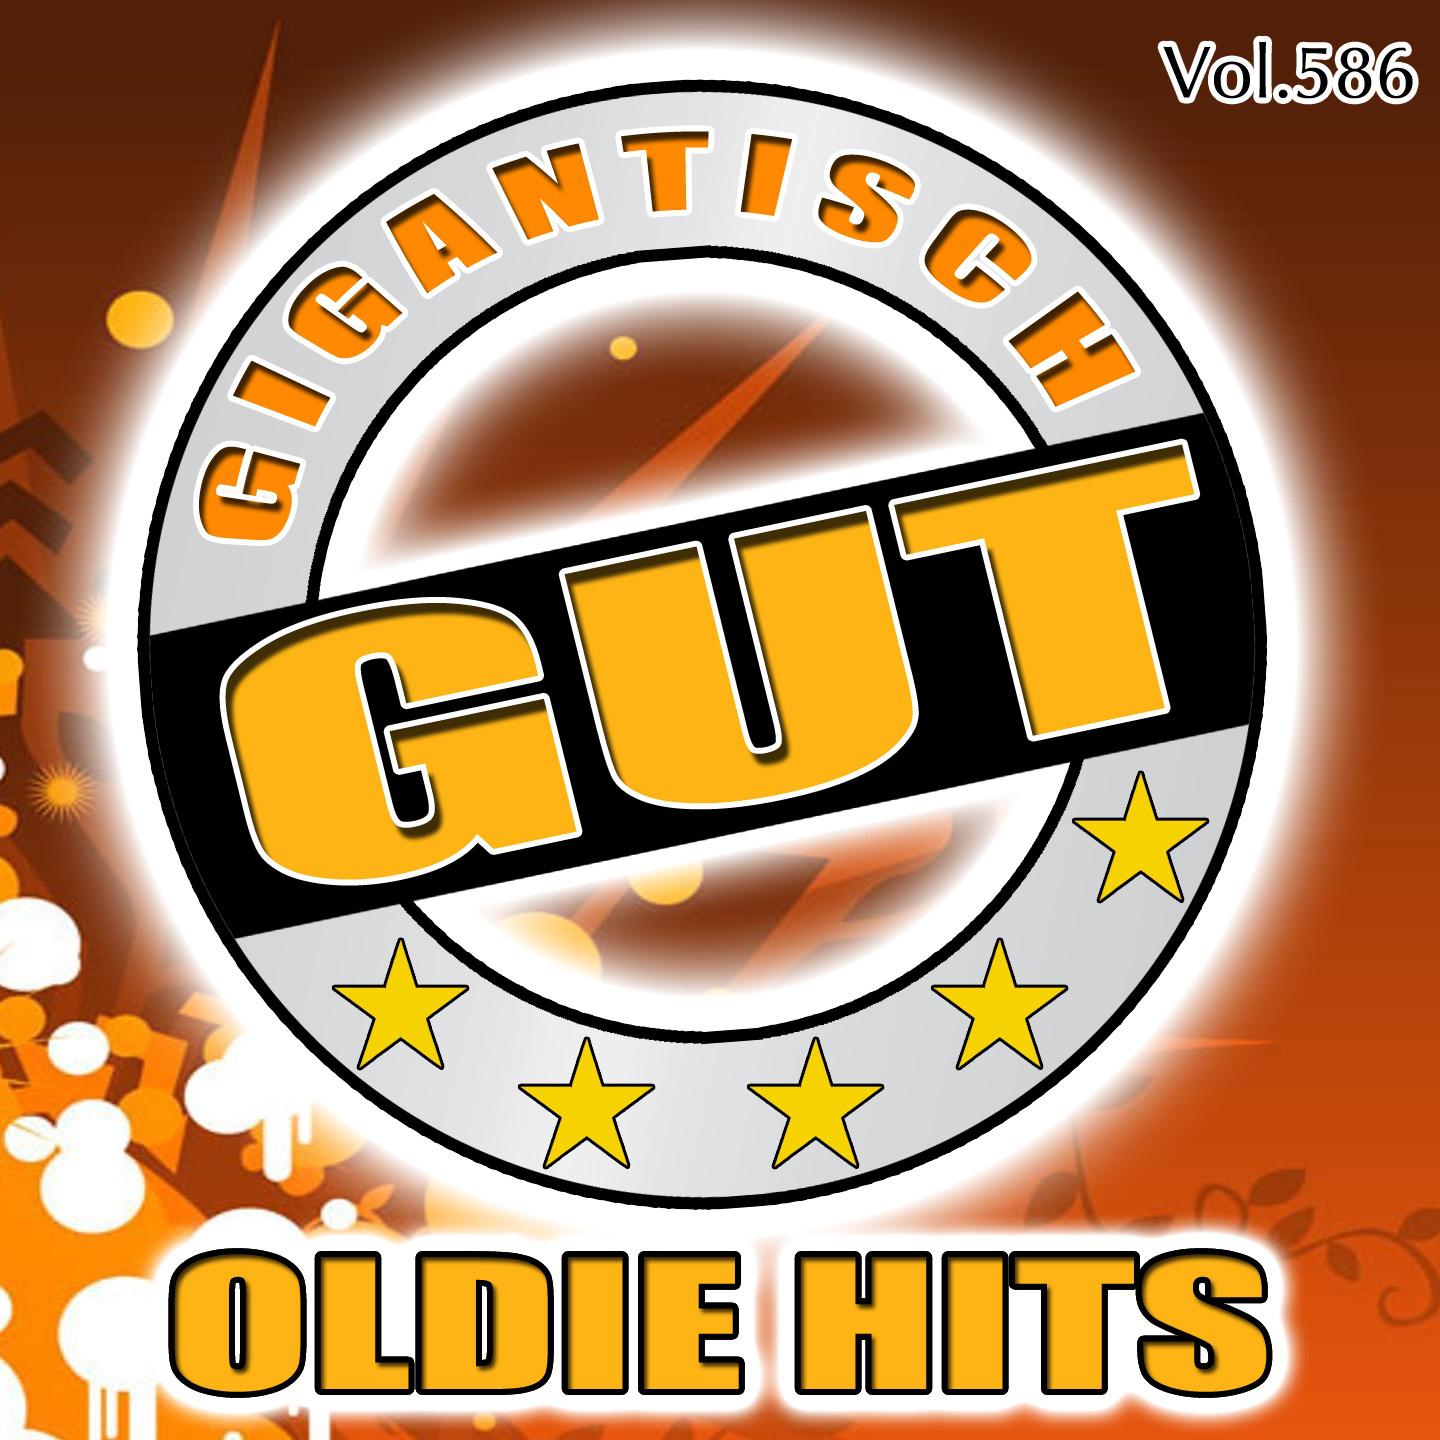 Gigantisch Gut: Oldie Hits, Vol. 586